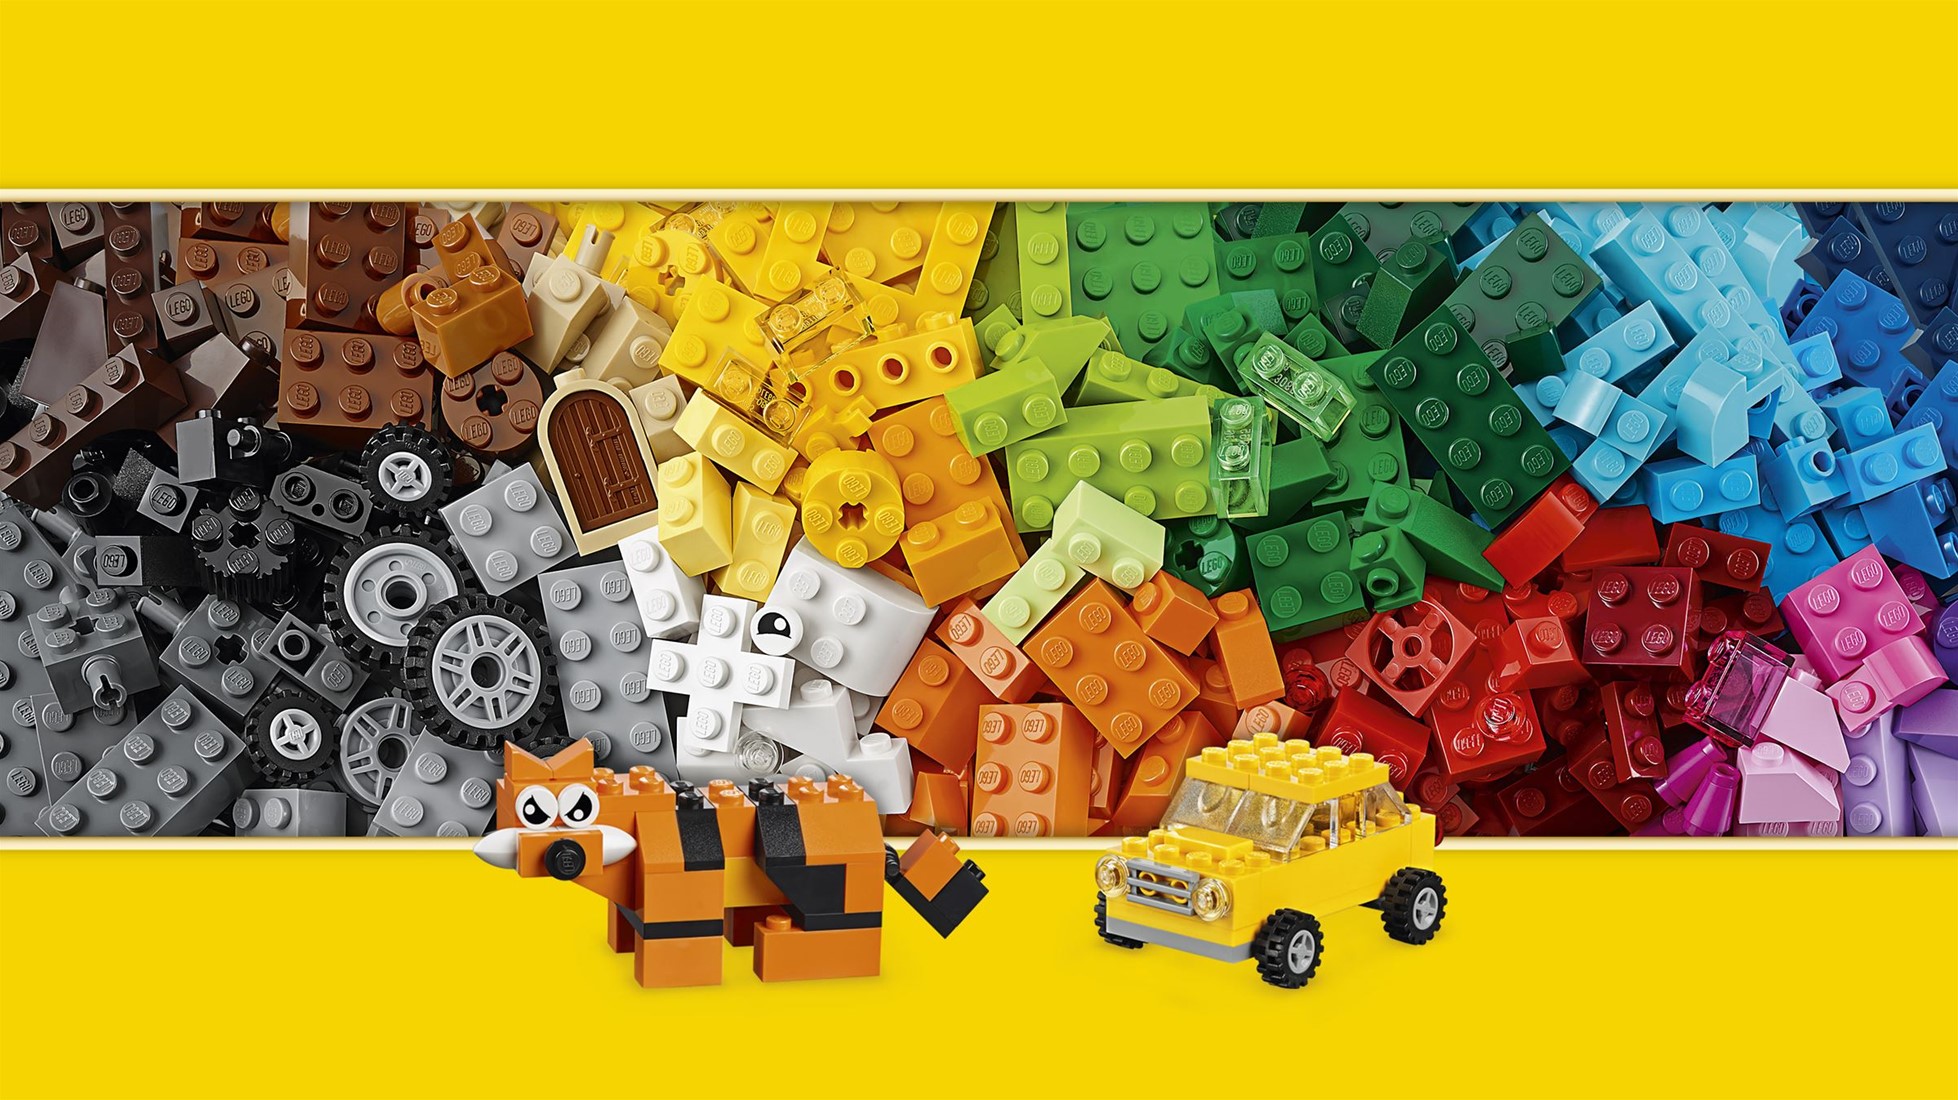 LEGO® Classic 10696 La boîte de briques créatives, Rangement